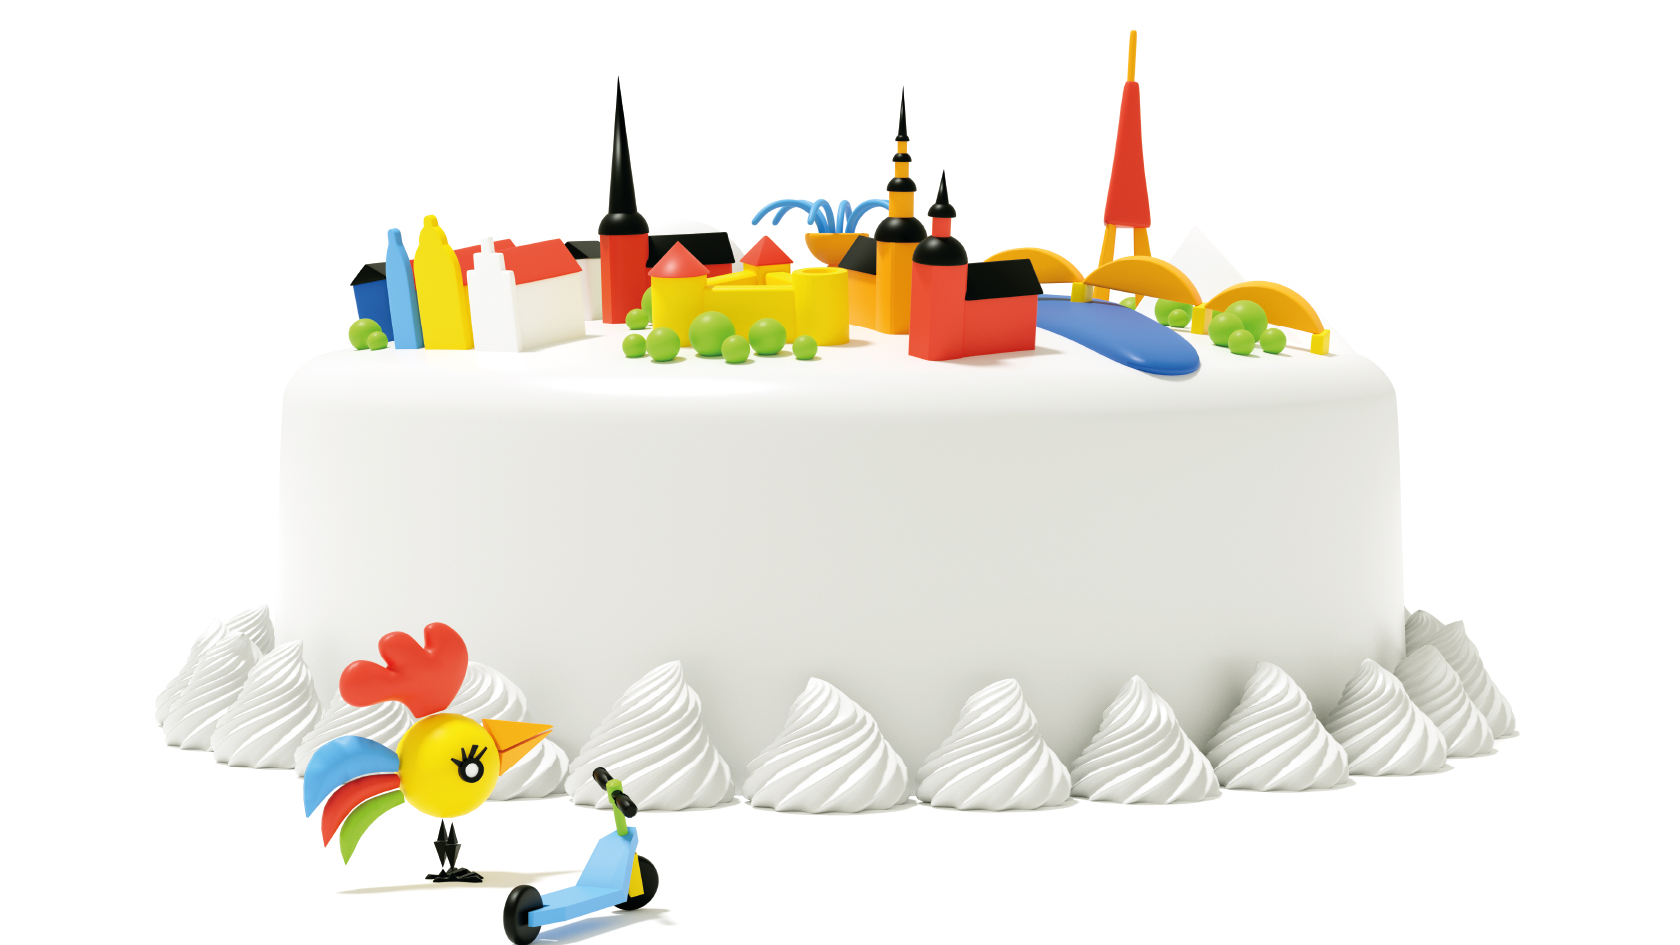  Galvaspilsētas dzimšanas dienu – Rīgas svētkus – šogad atzīmēs no 14. līdz 16. augustam